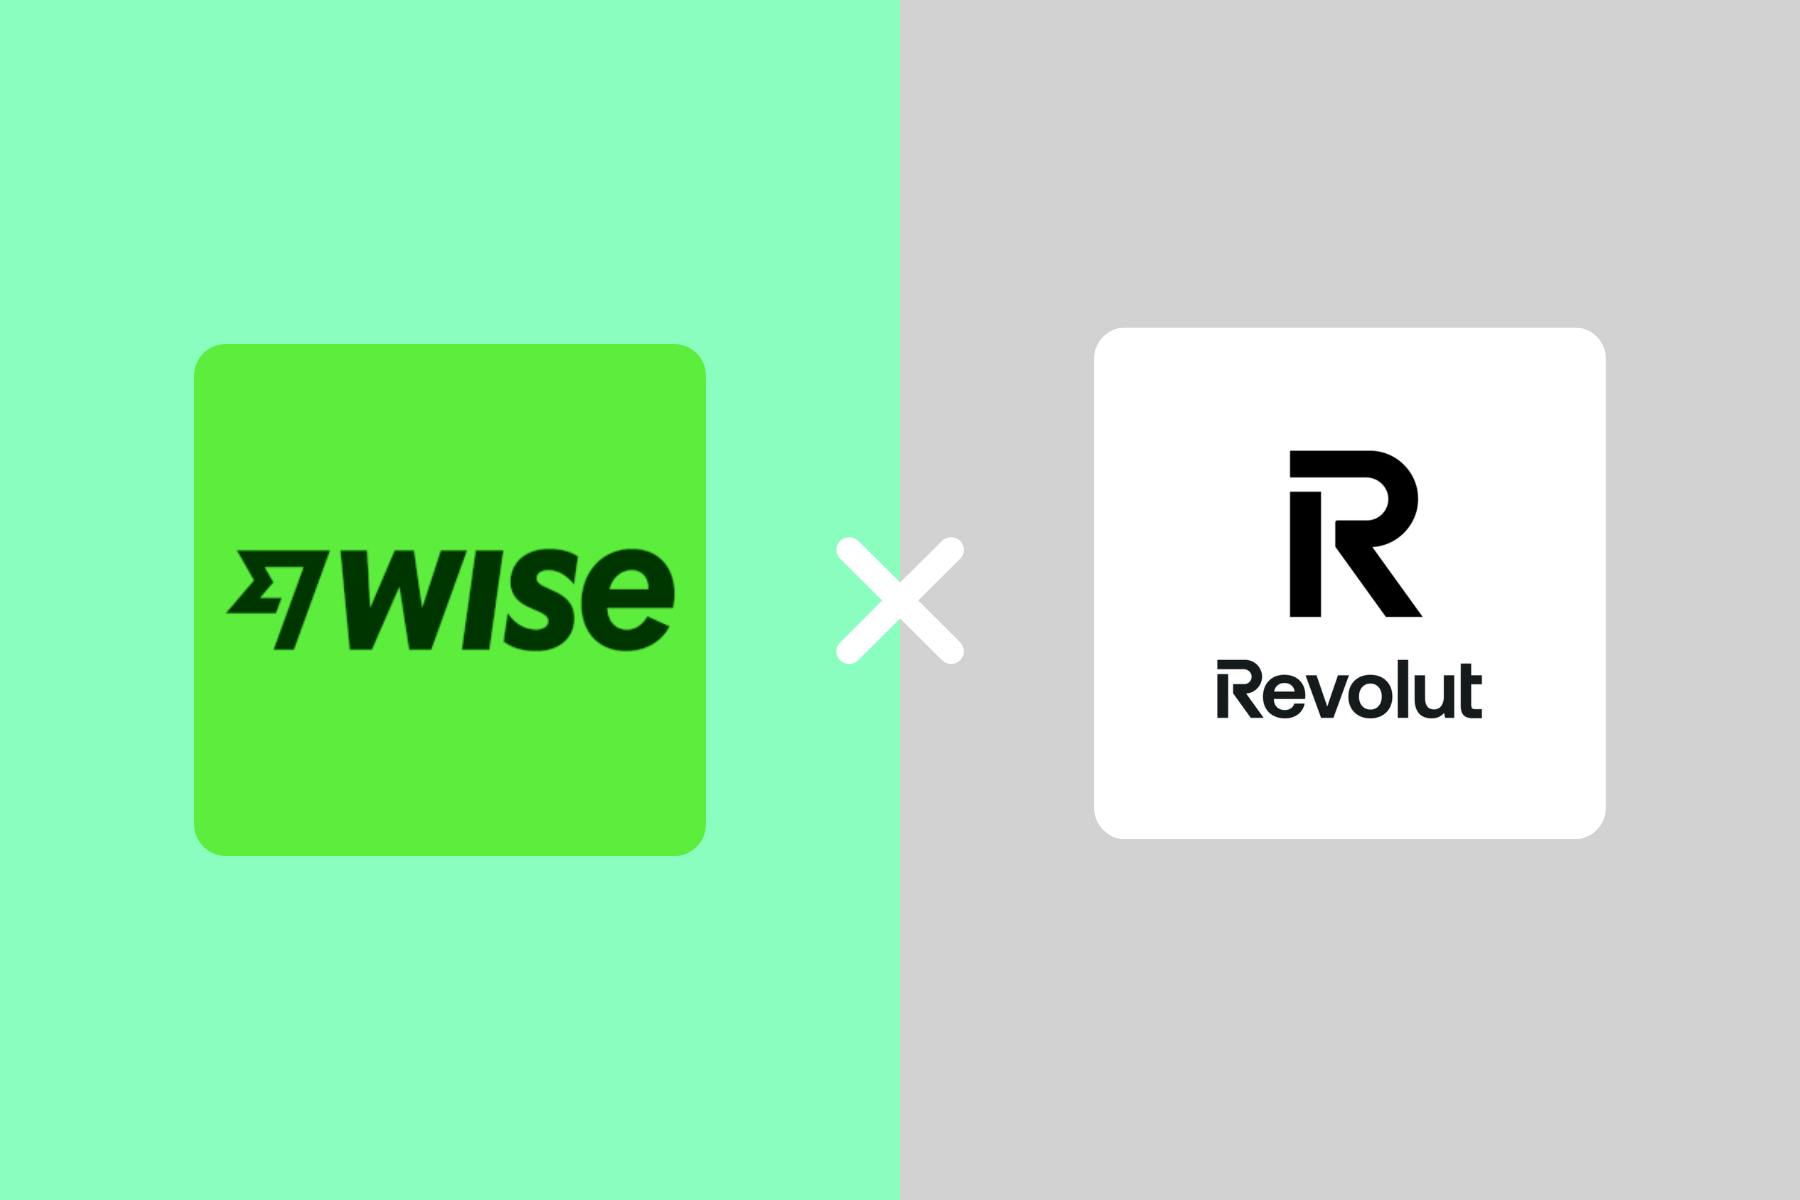 Montagem com as logos da Wise e Revolut mostrando um X entre elas